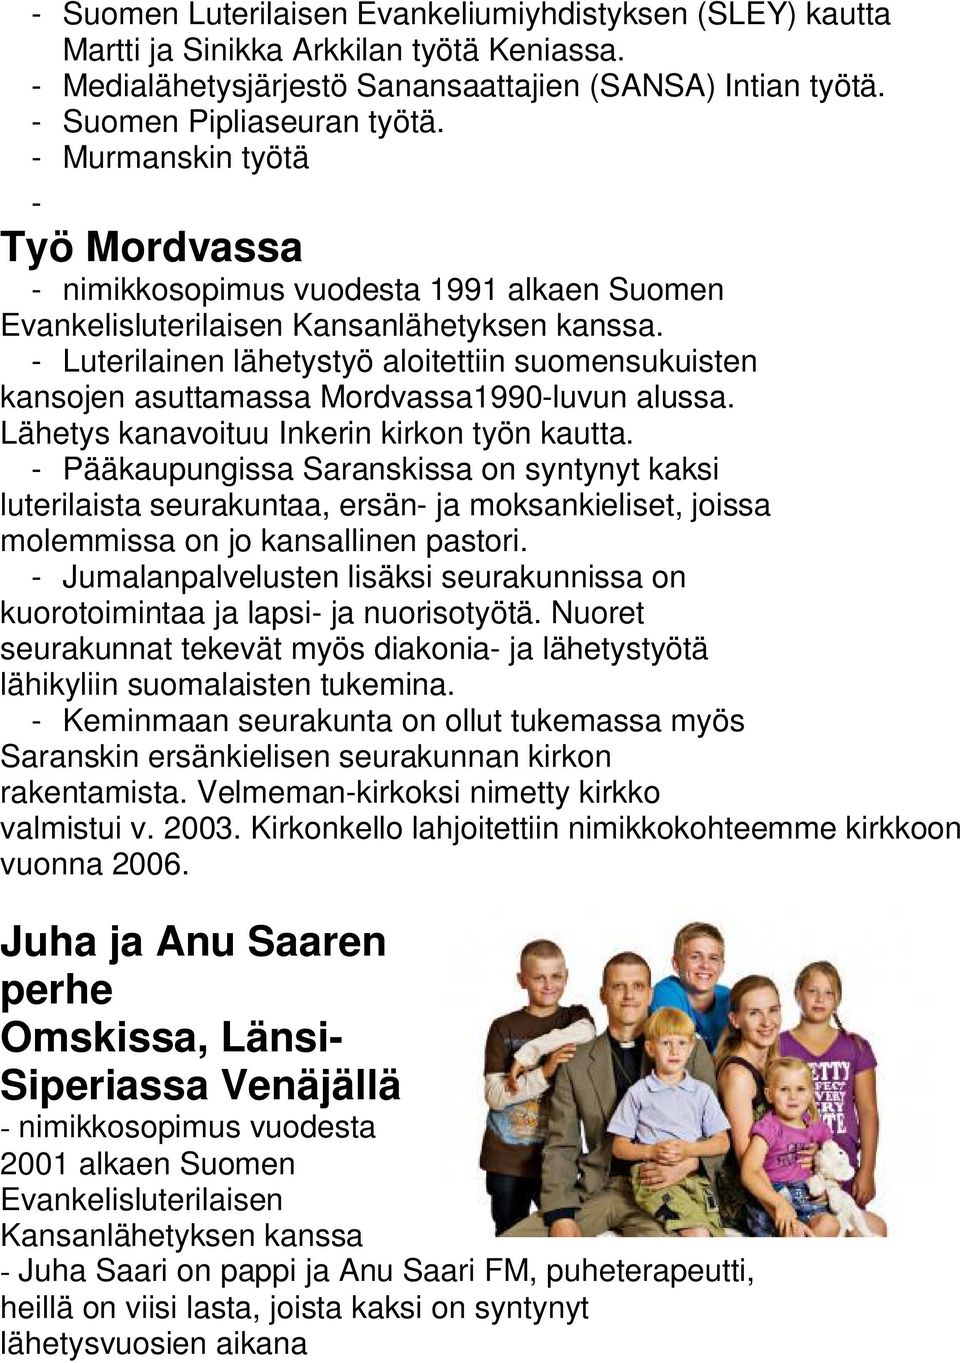 - Luterilainen lähetystyö aloitettiin suomensukuisten kansojen asuttamassa Mordvassa1990-luvun alussa. Lähetys kanavoituu Inkerin kirkon työn kautta.